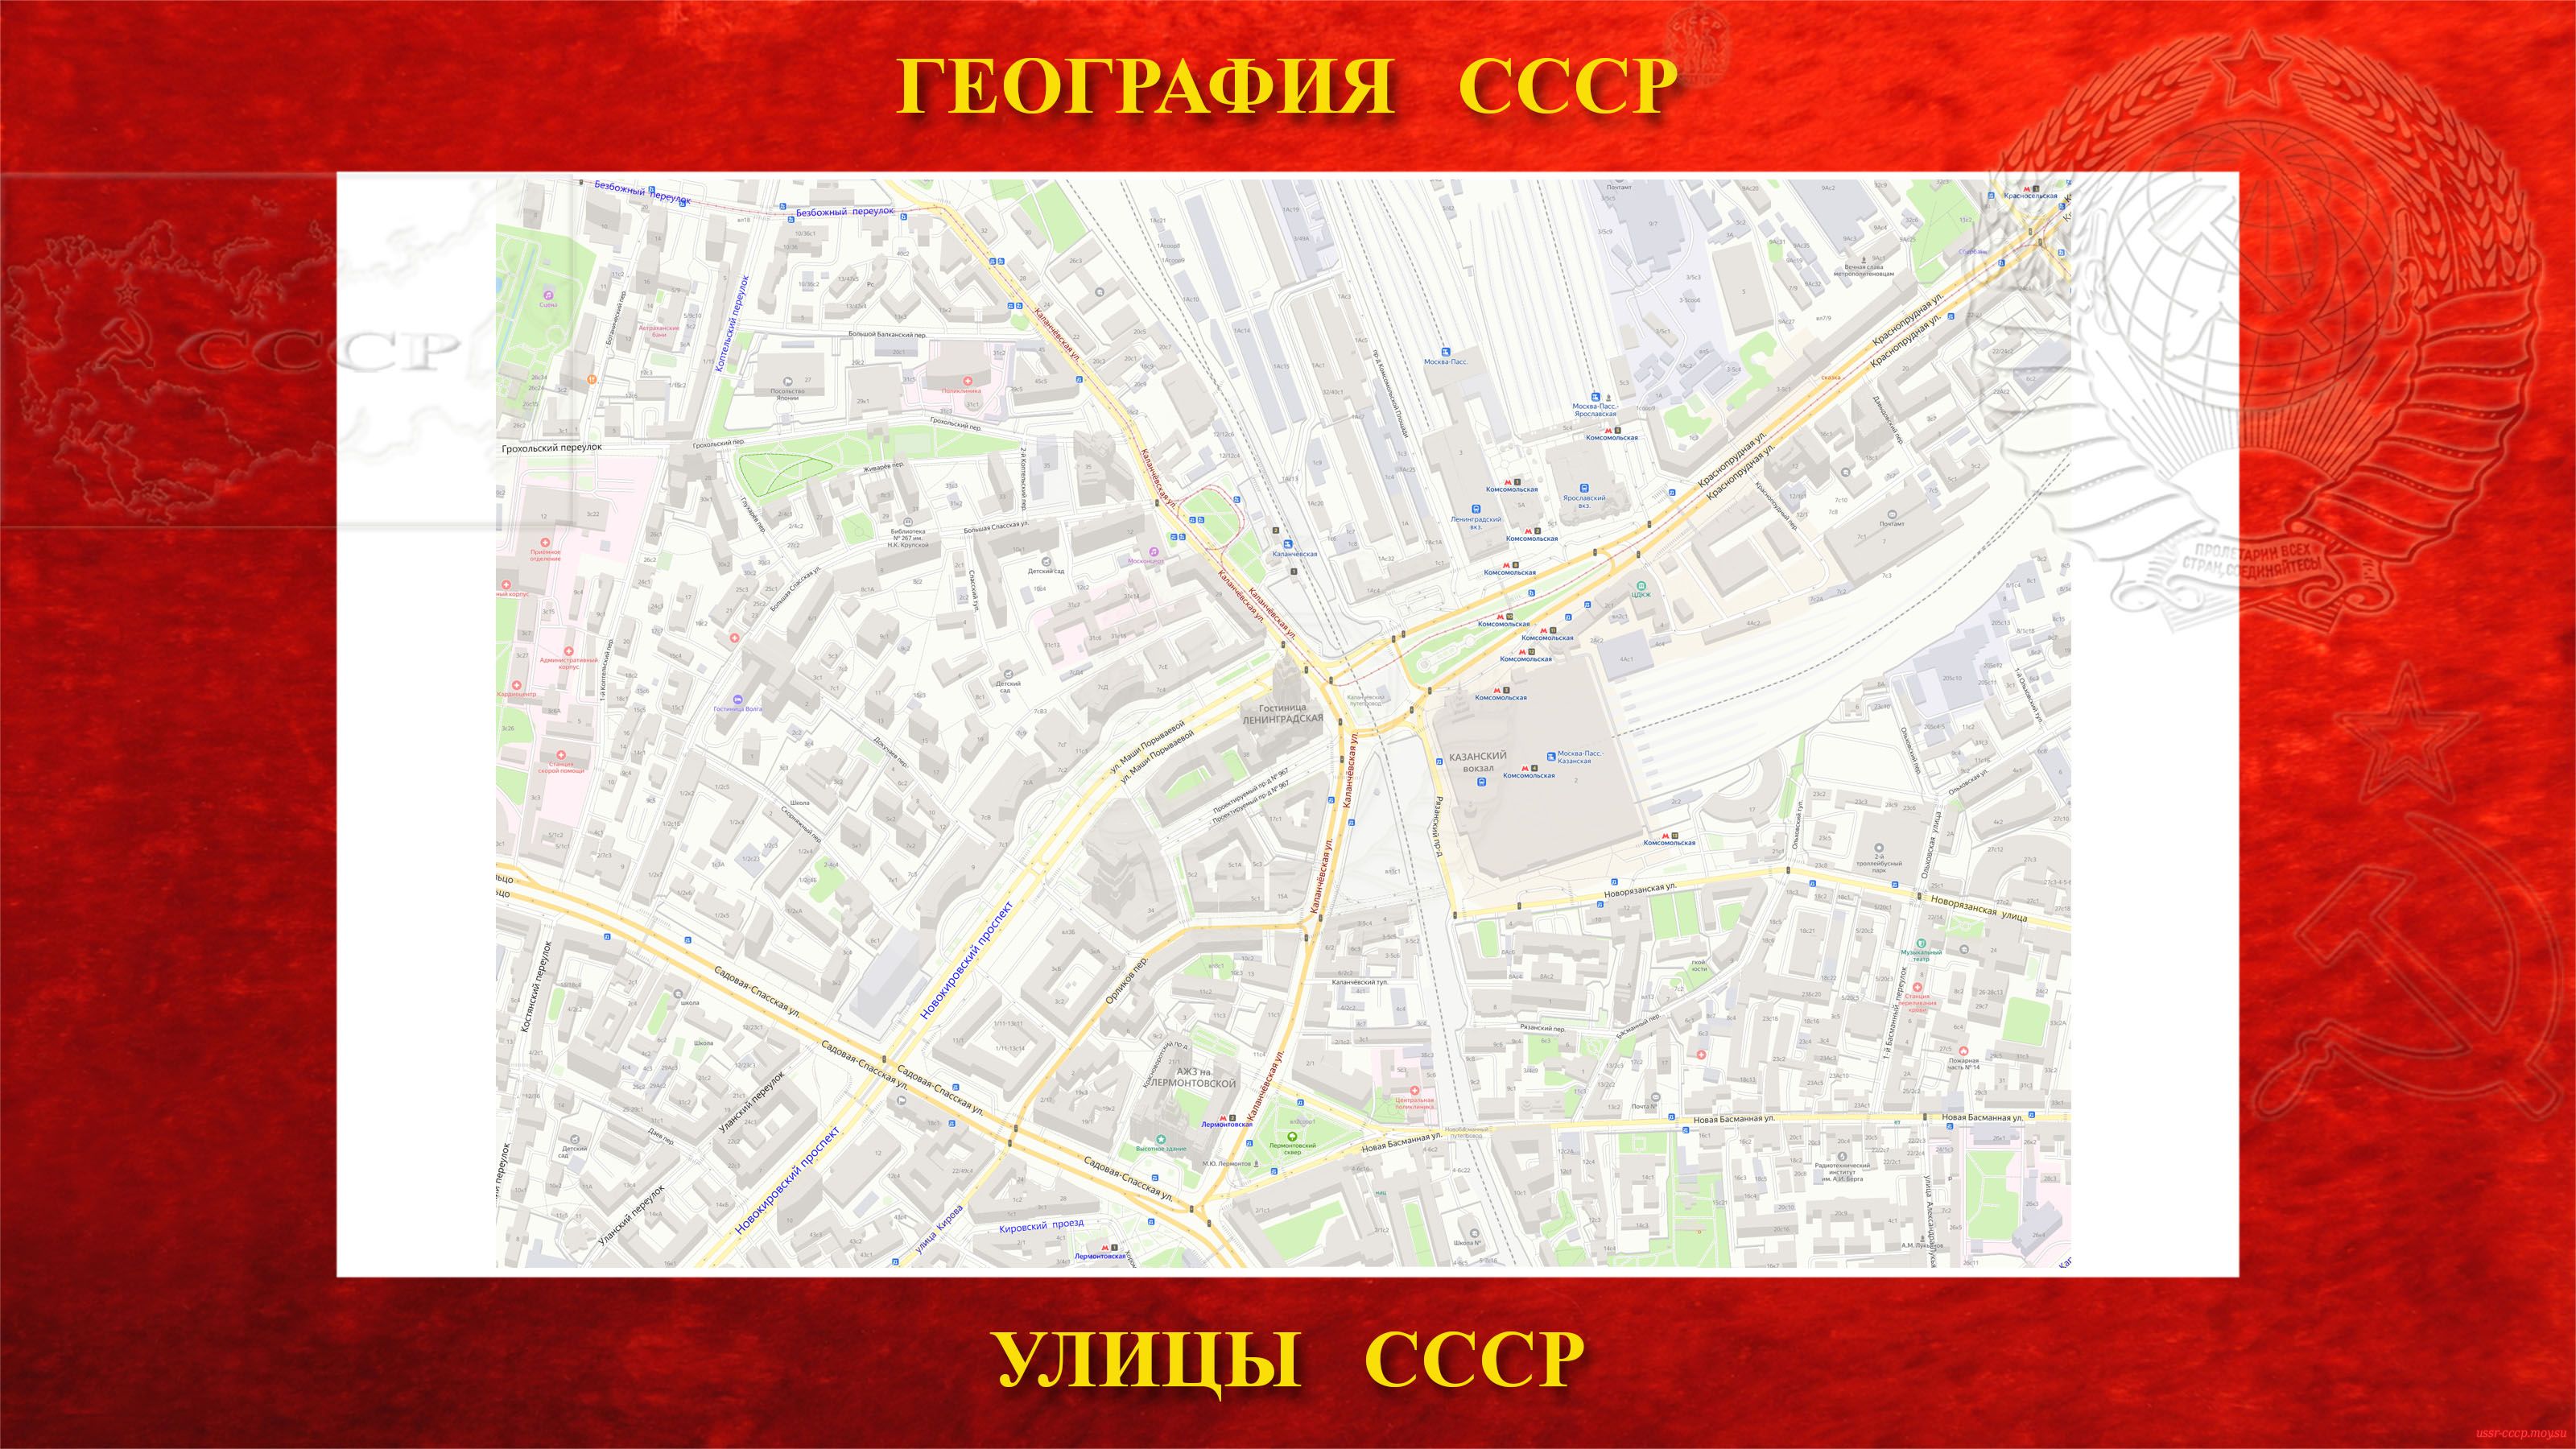 Каланчёвская — улица в центре Москвы